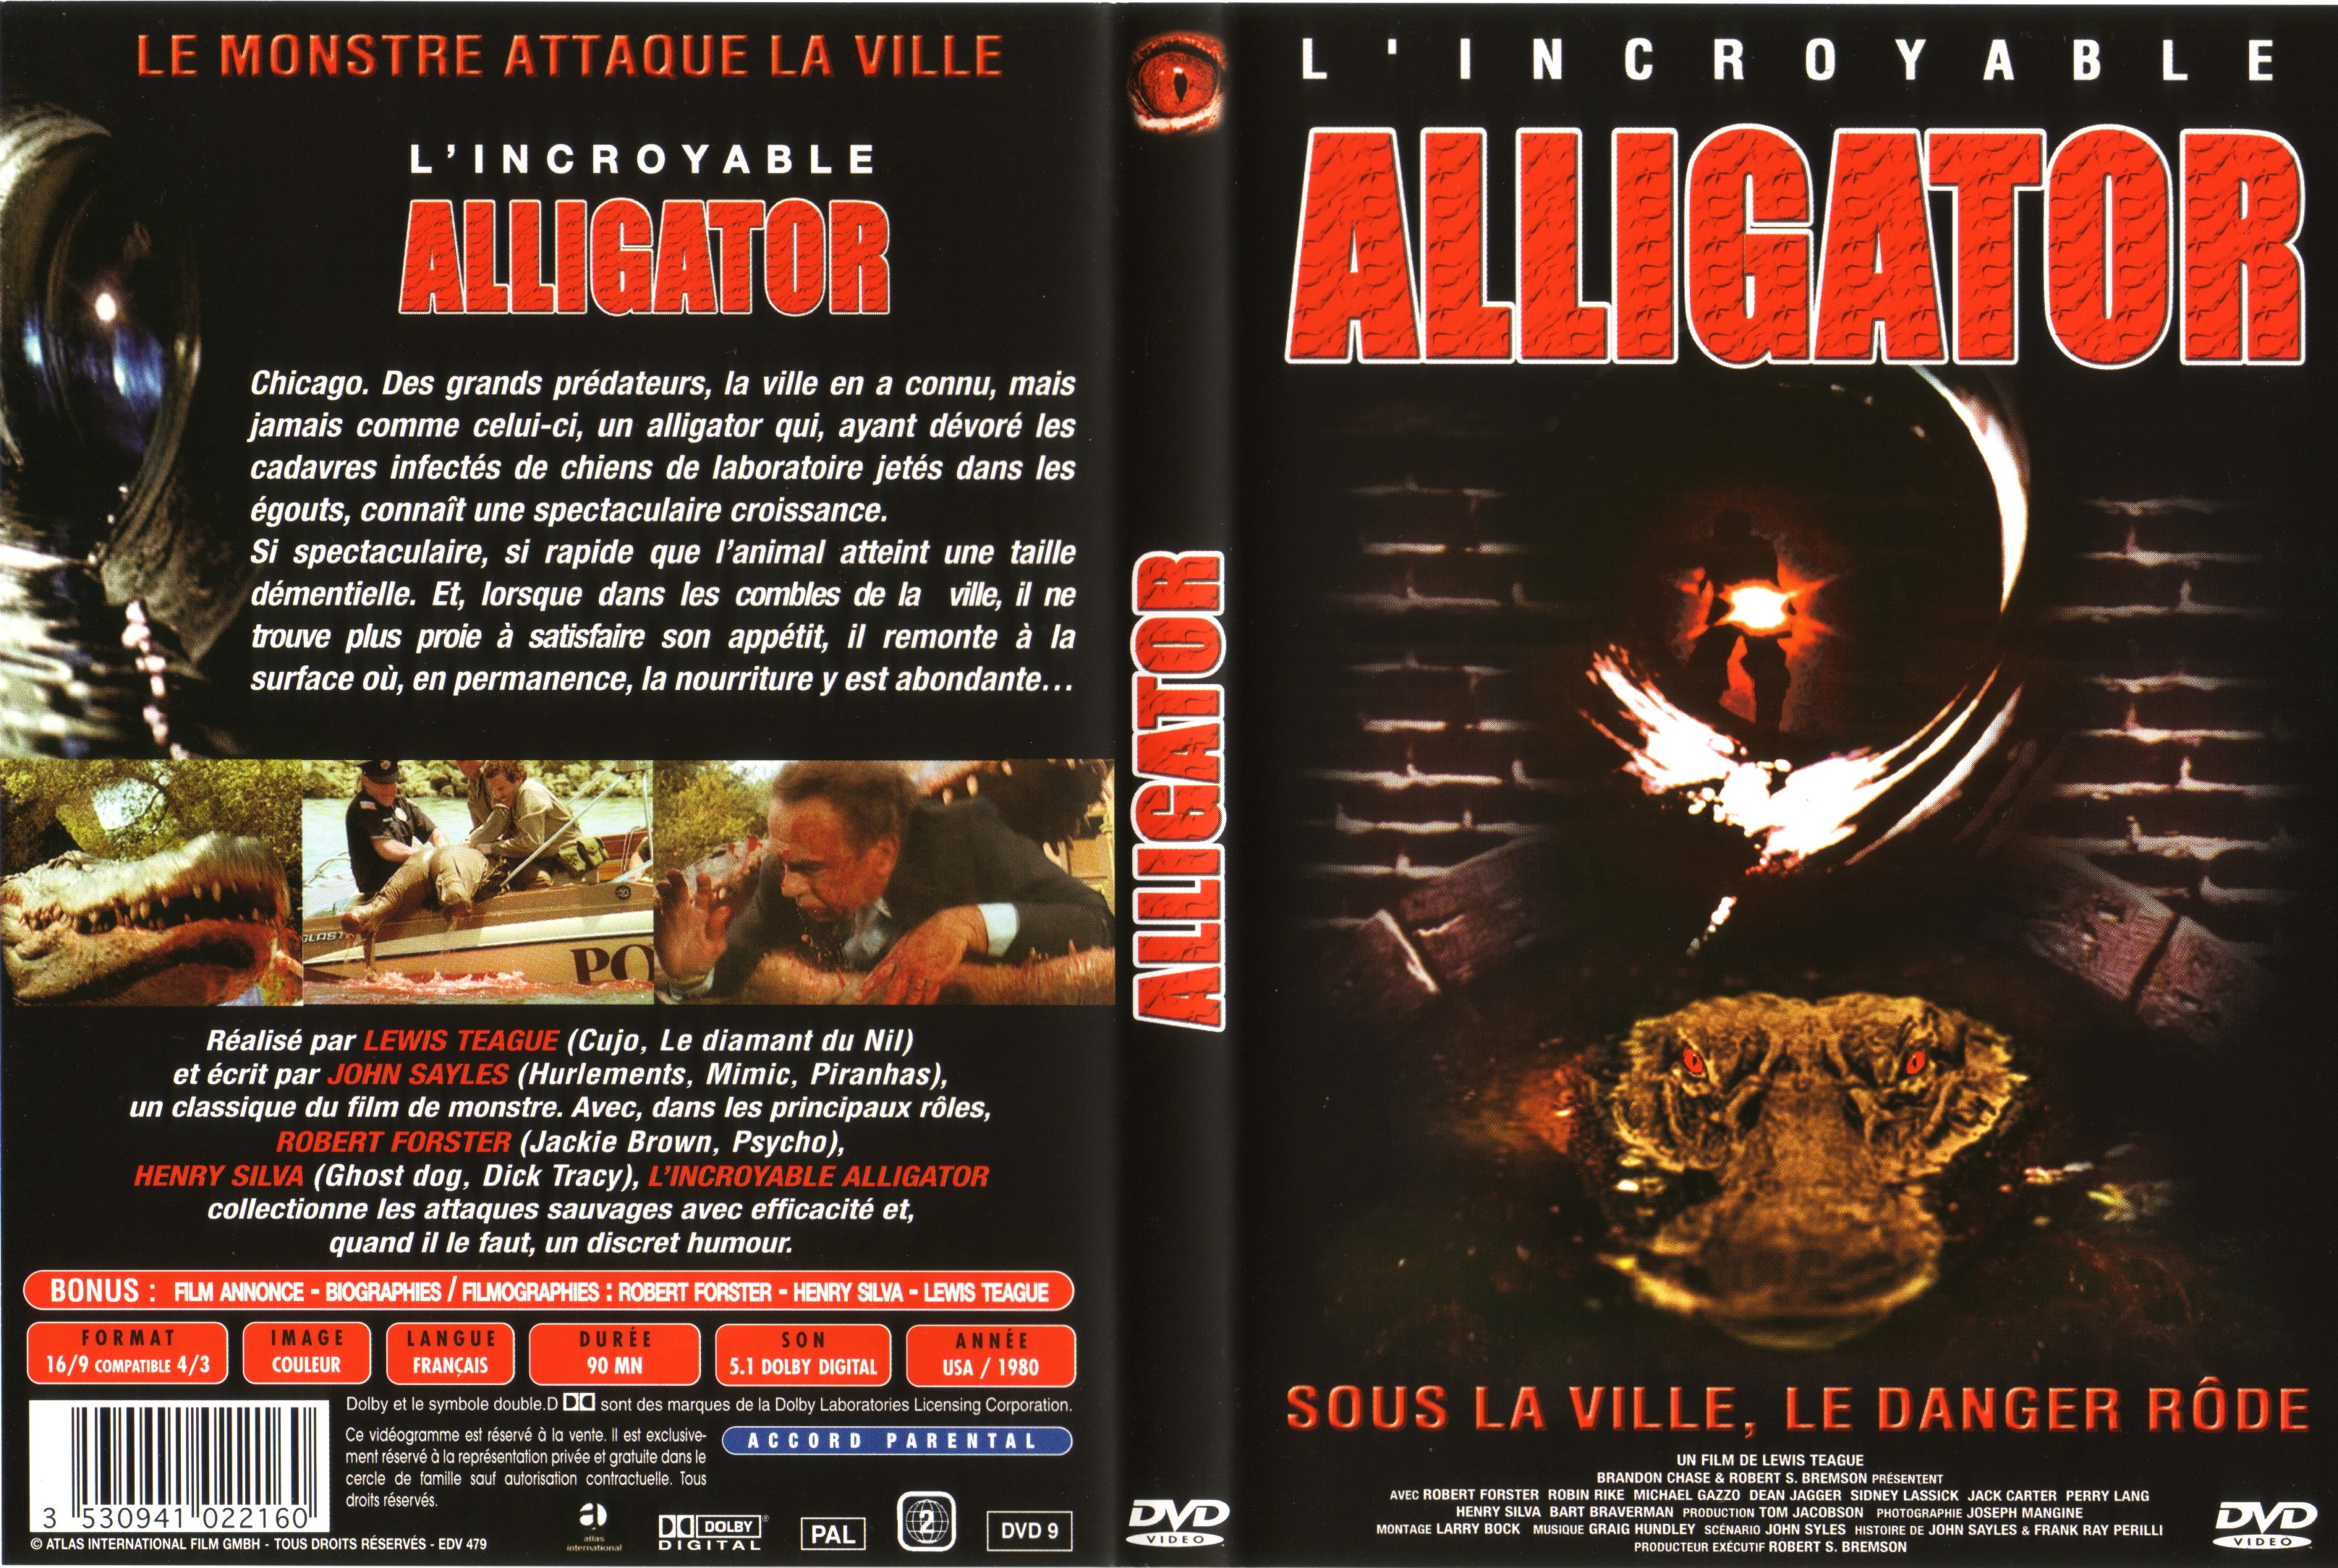 Jaquette DVD Alligator v2